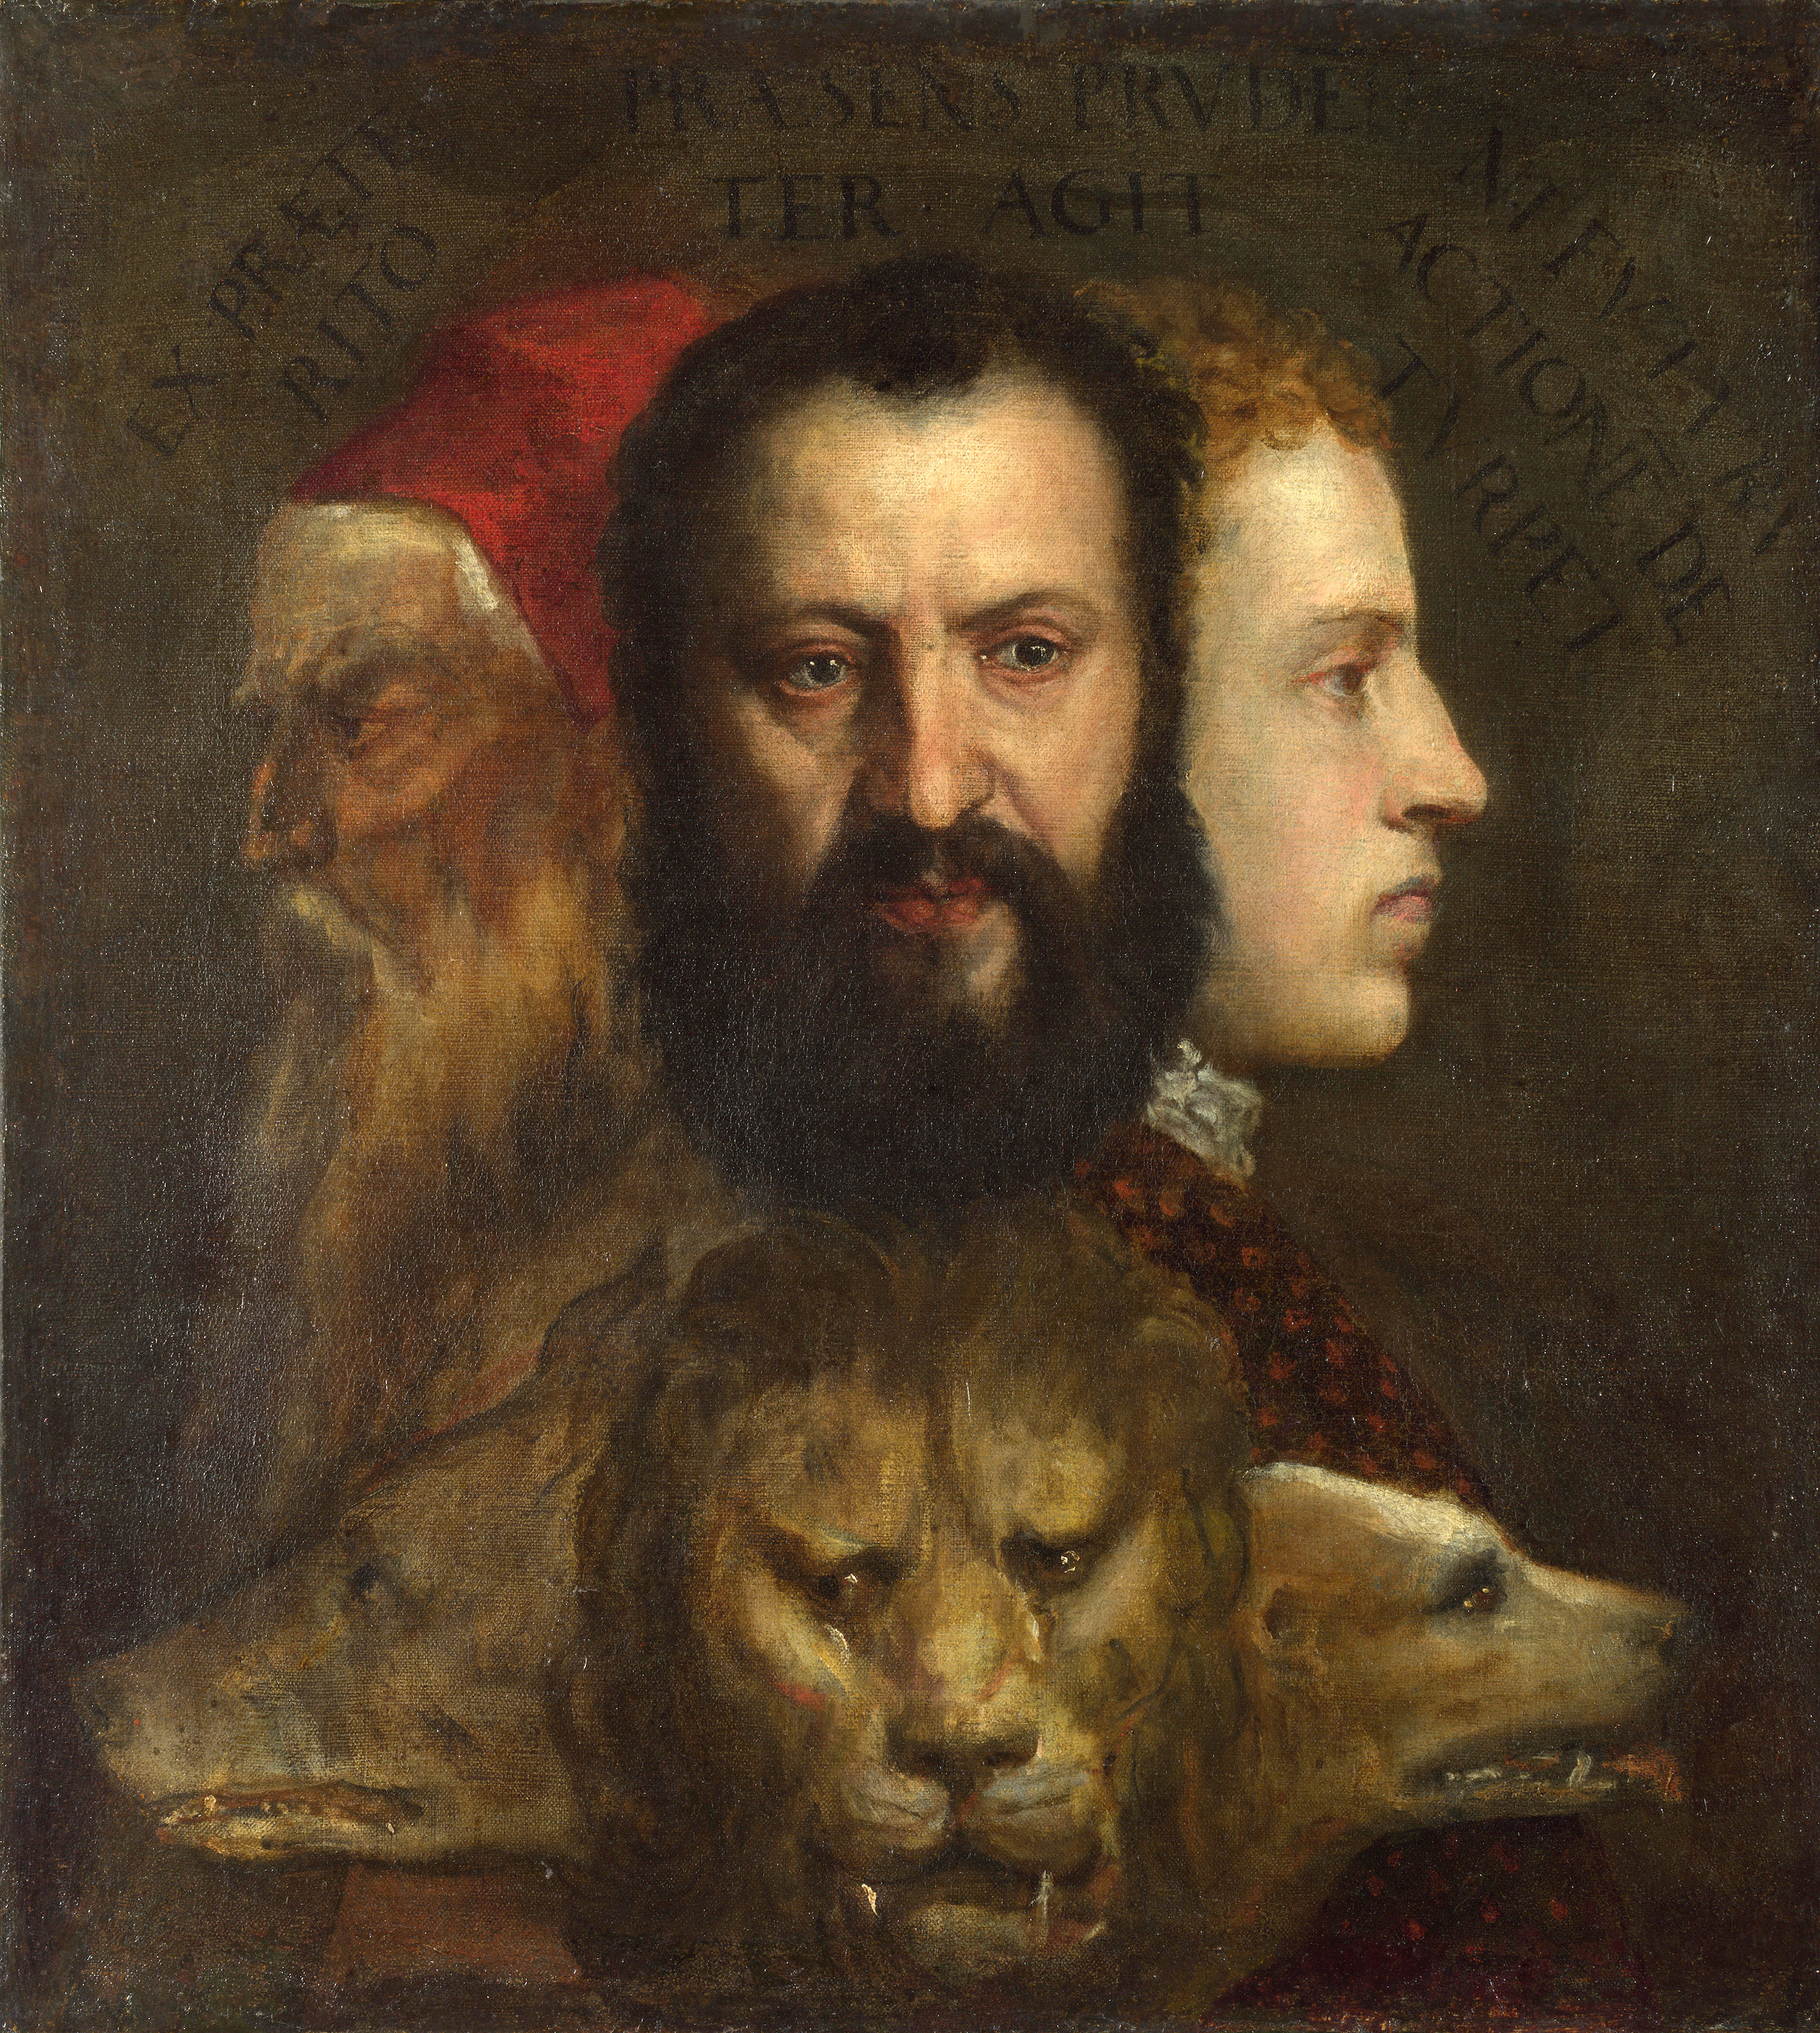 (Zamanın Yönettiği) İhtiyat Alegorisi by  Titian - 1565 dolayları - 76 x 69 cm 